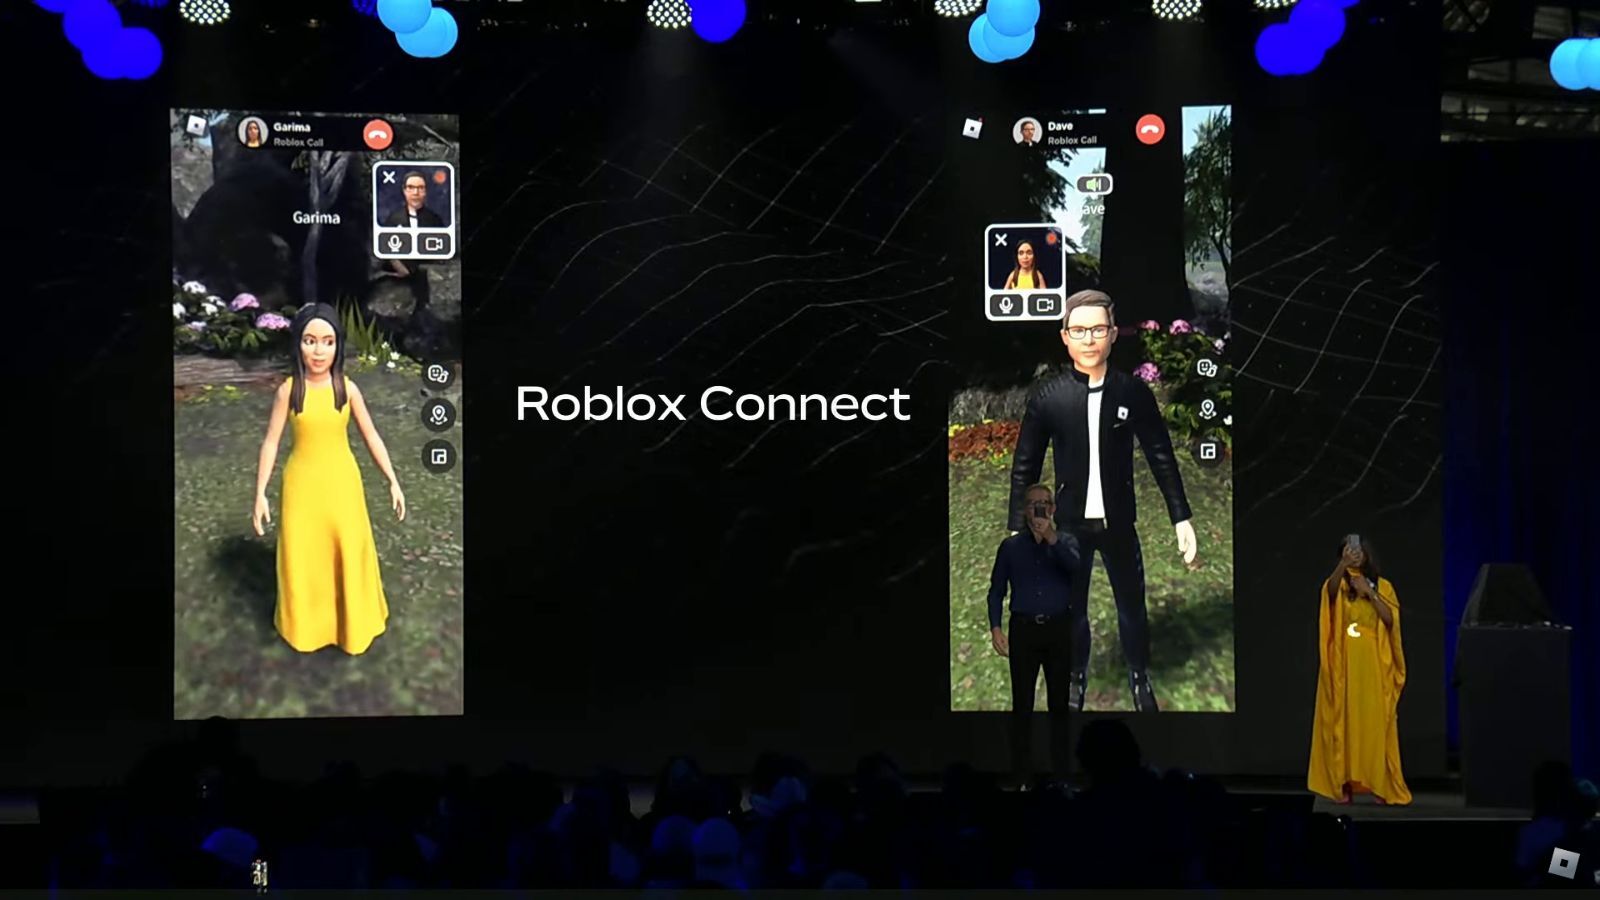 Roblox founder David Baszucki reveals major update coming soon - Dexerto